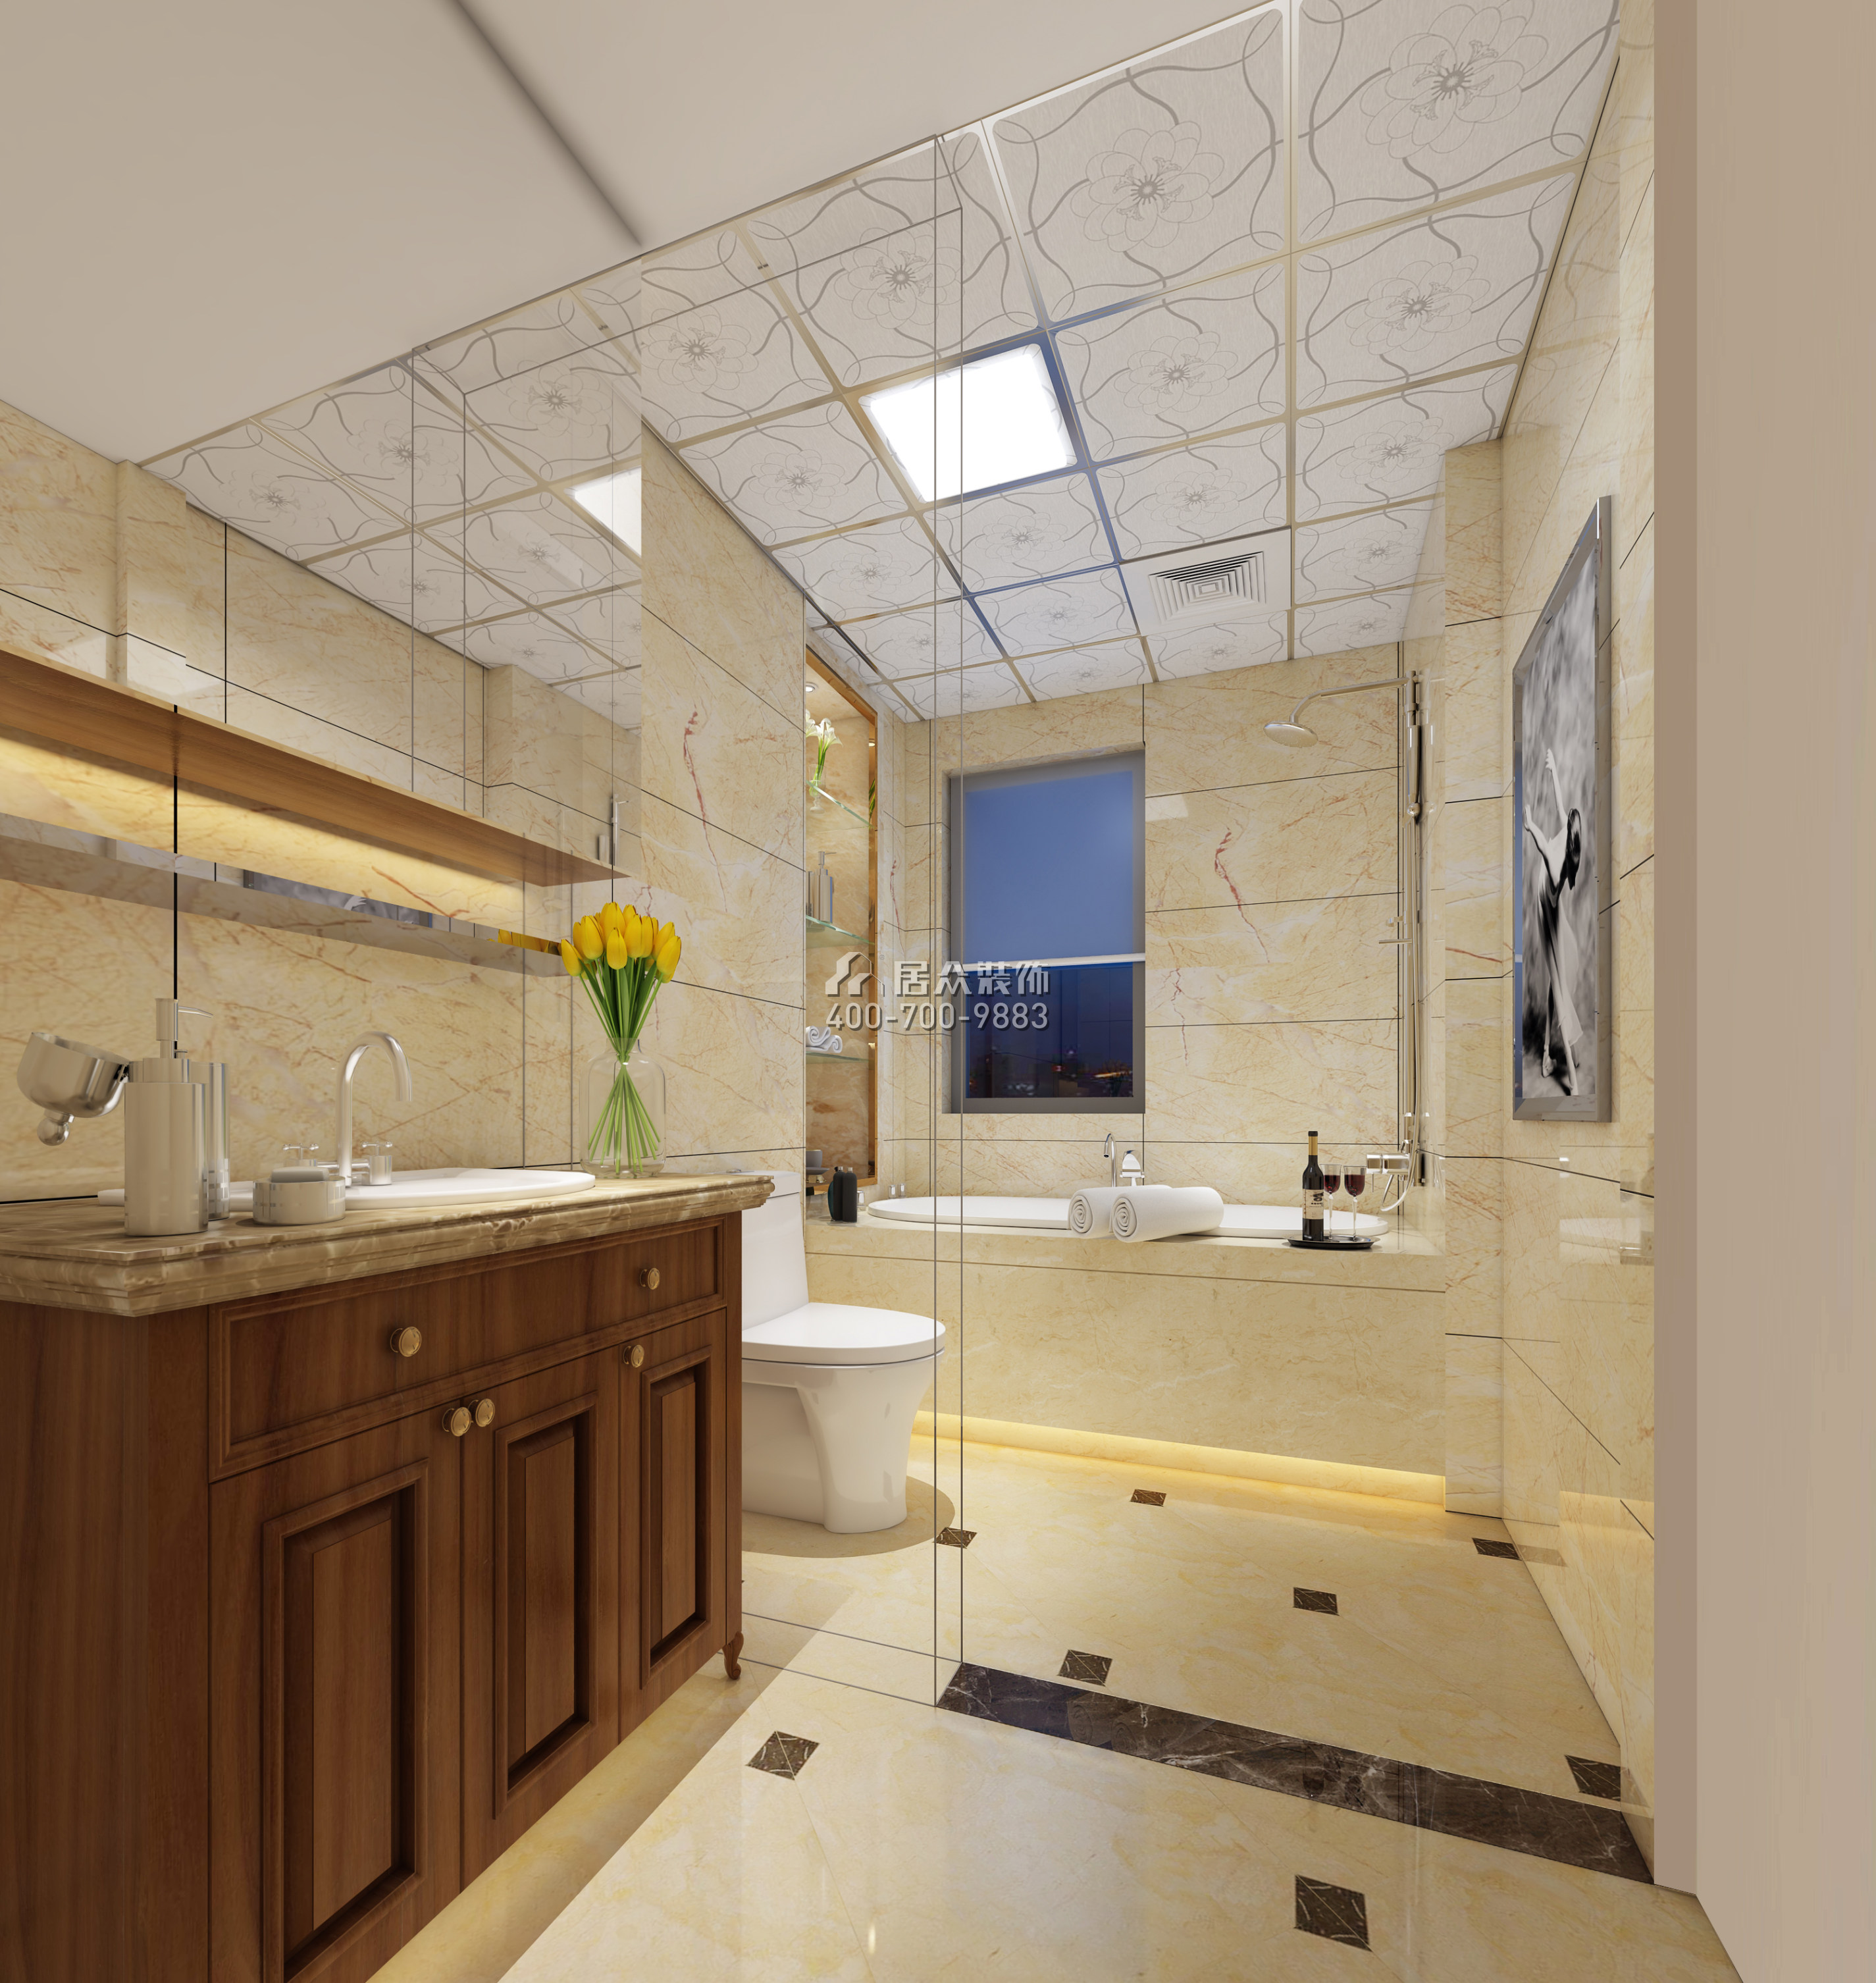 华润城二期120平方米美式风格平层户型卫生间装修效果图